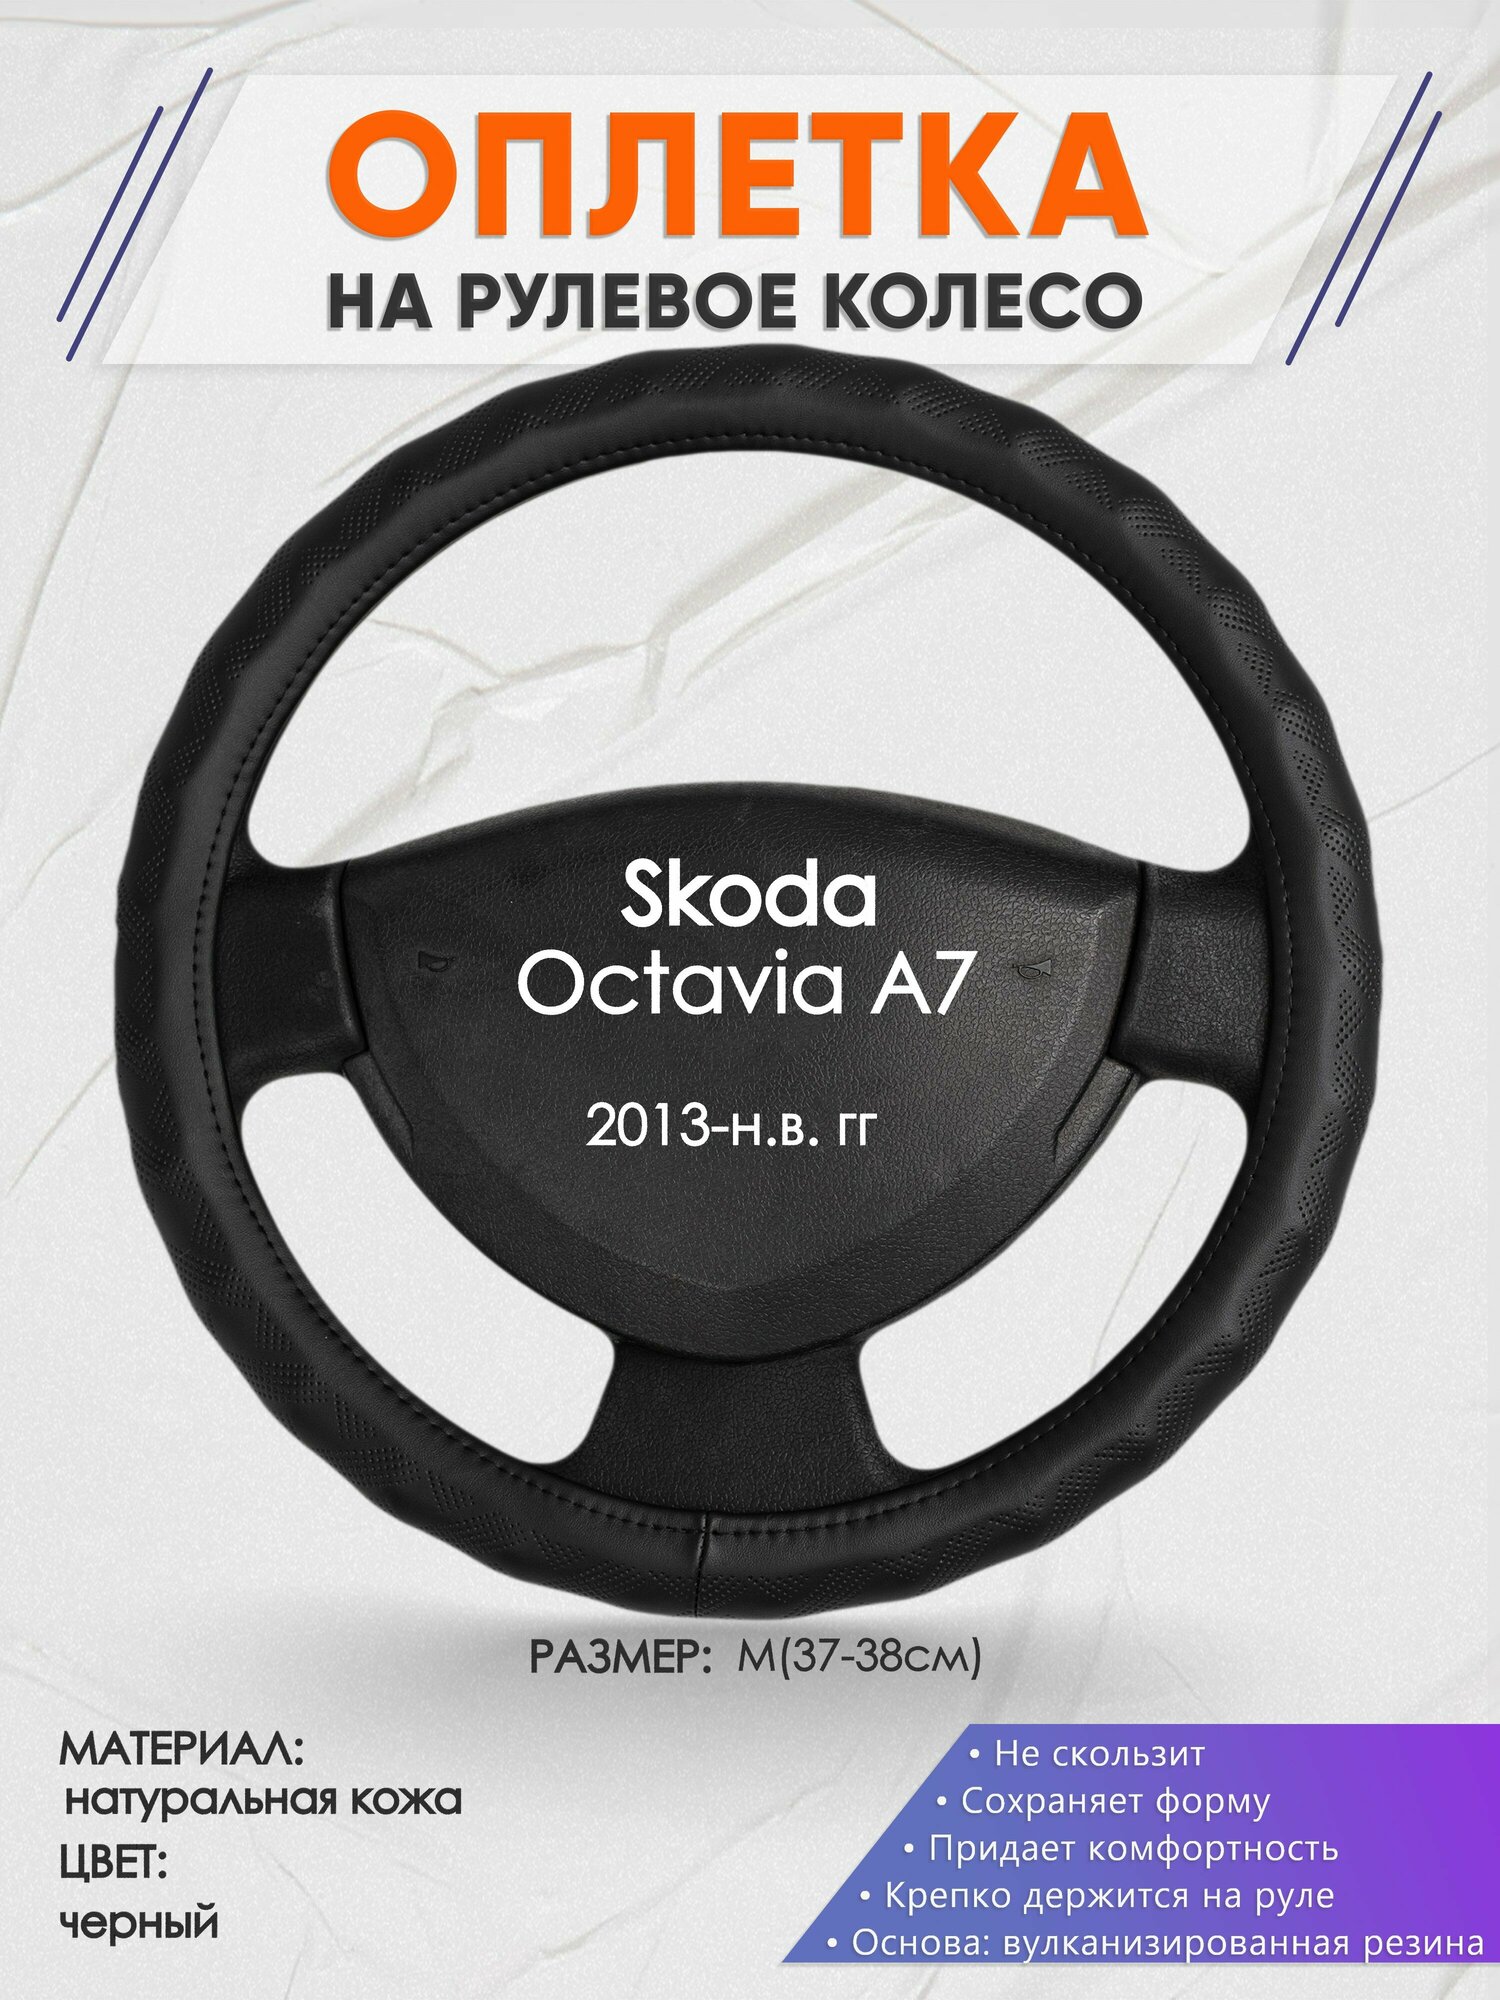 Оплетка на руль для Skoda Octavia A7(Шкода Октавия А7) 2013-н. в, M(37-38см), Натуральная кожа 26